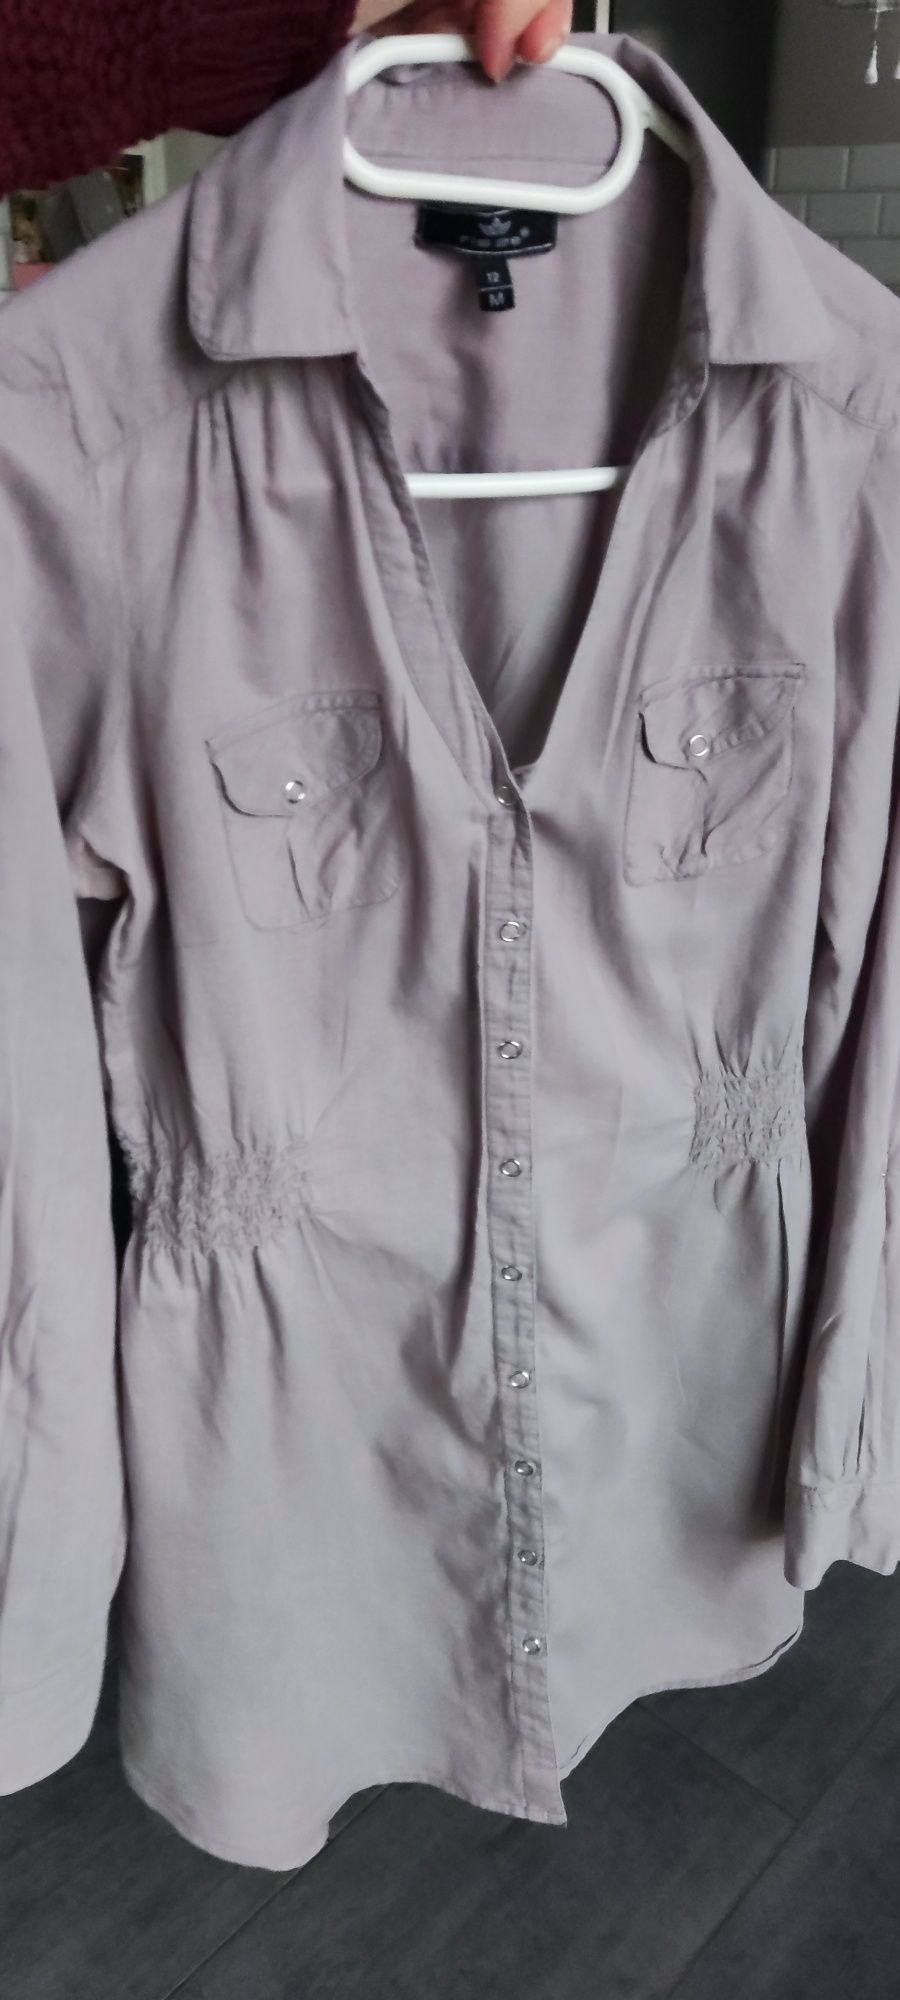 Tunika koszula bluzka ciążowa firmy Risøe, rozmiar M (38).)